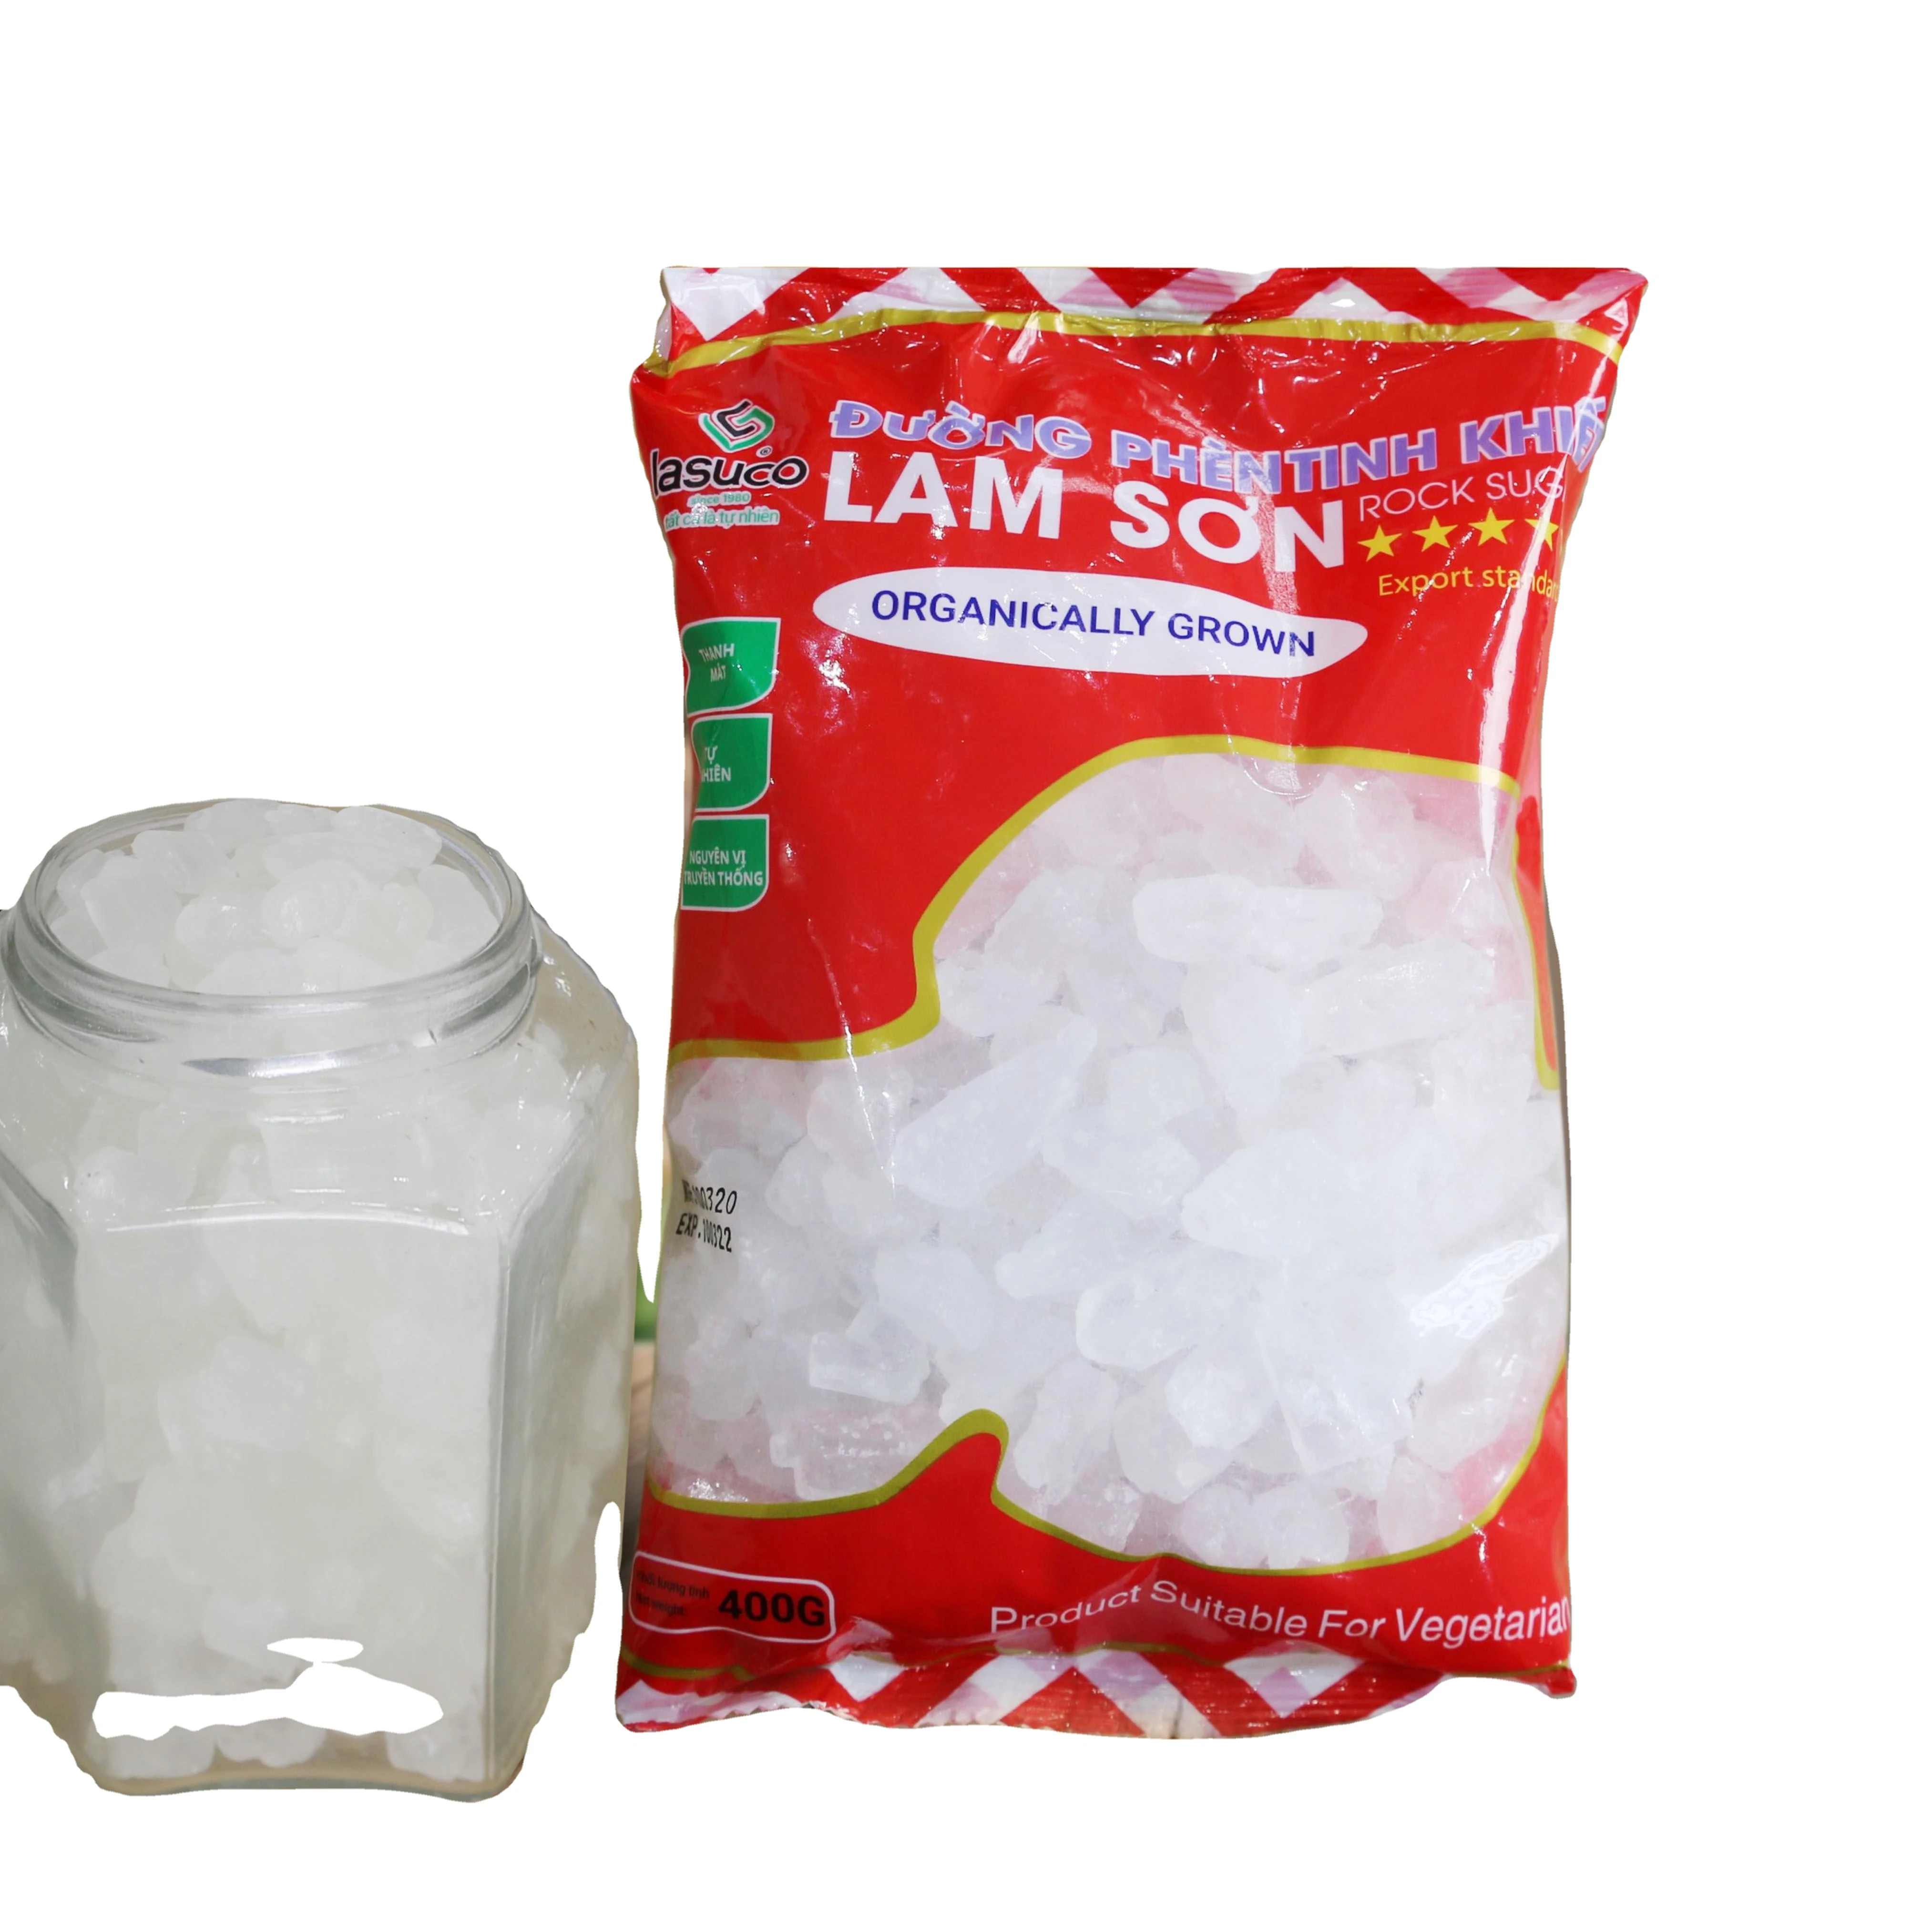 Фигурный сахар Lasuco (желтый/белый), Лидер продаж, упаковка 400 г в картонную коробку 16 кг, производитель из Вьетнама